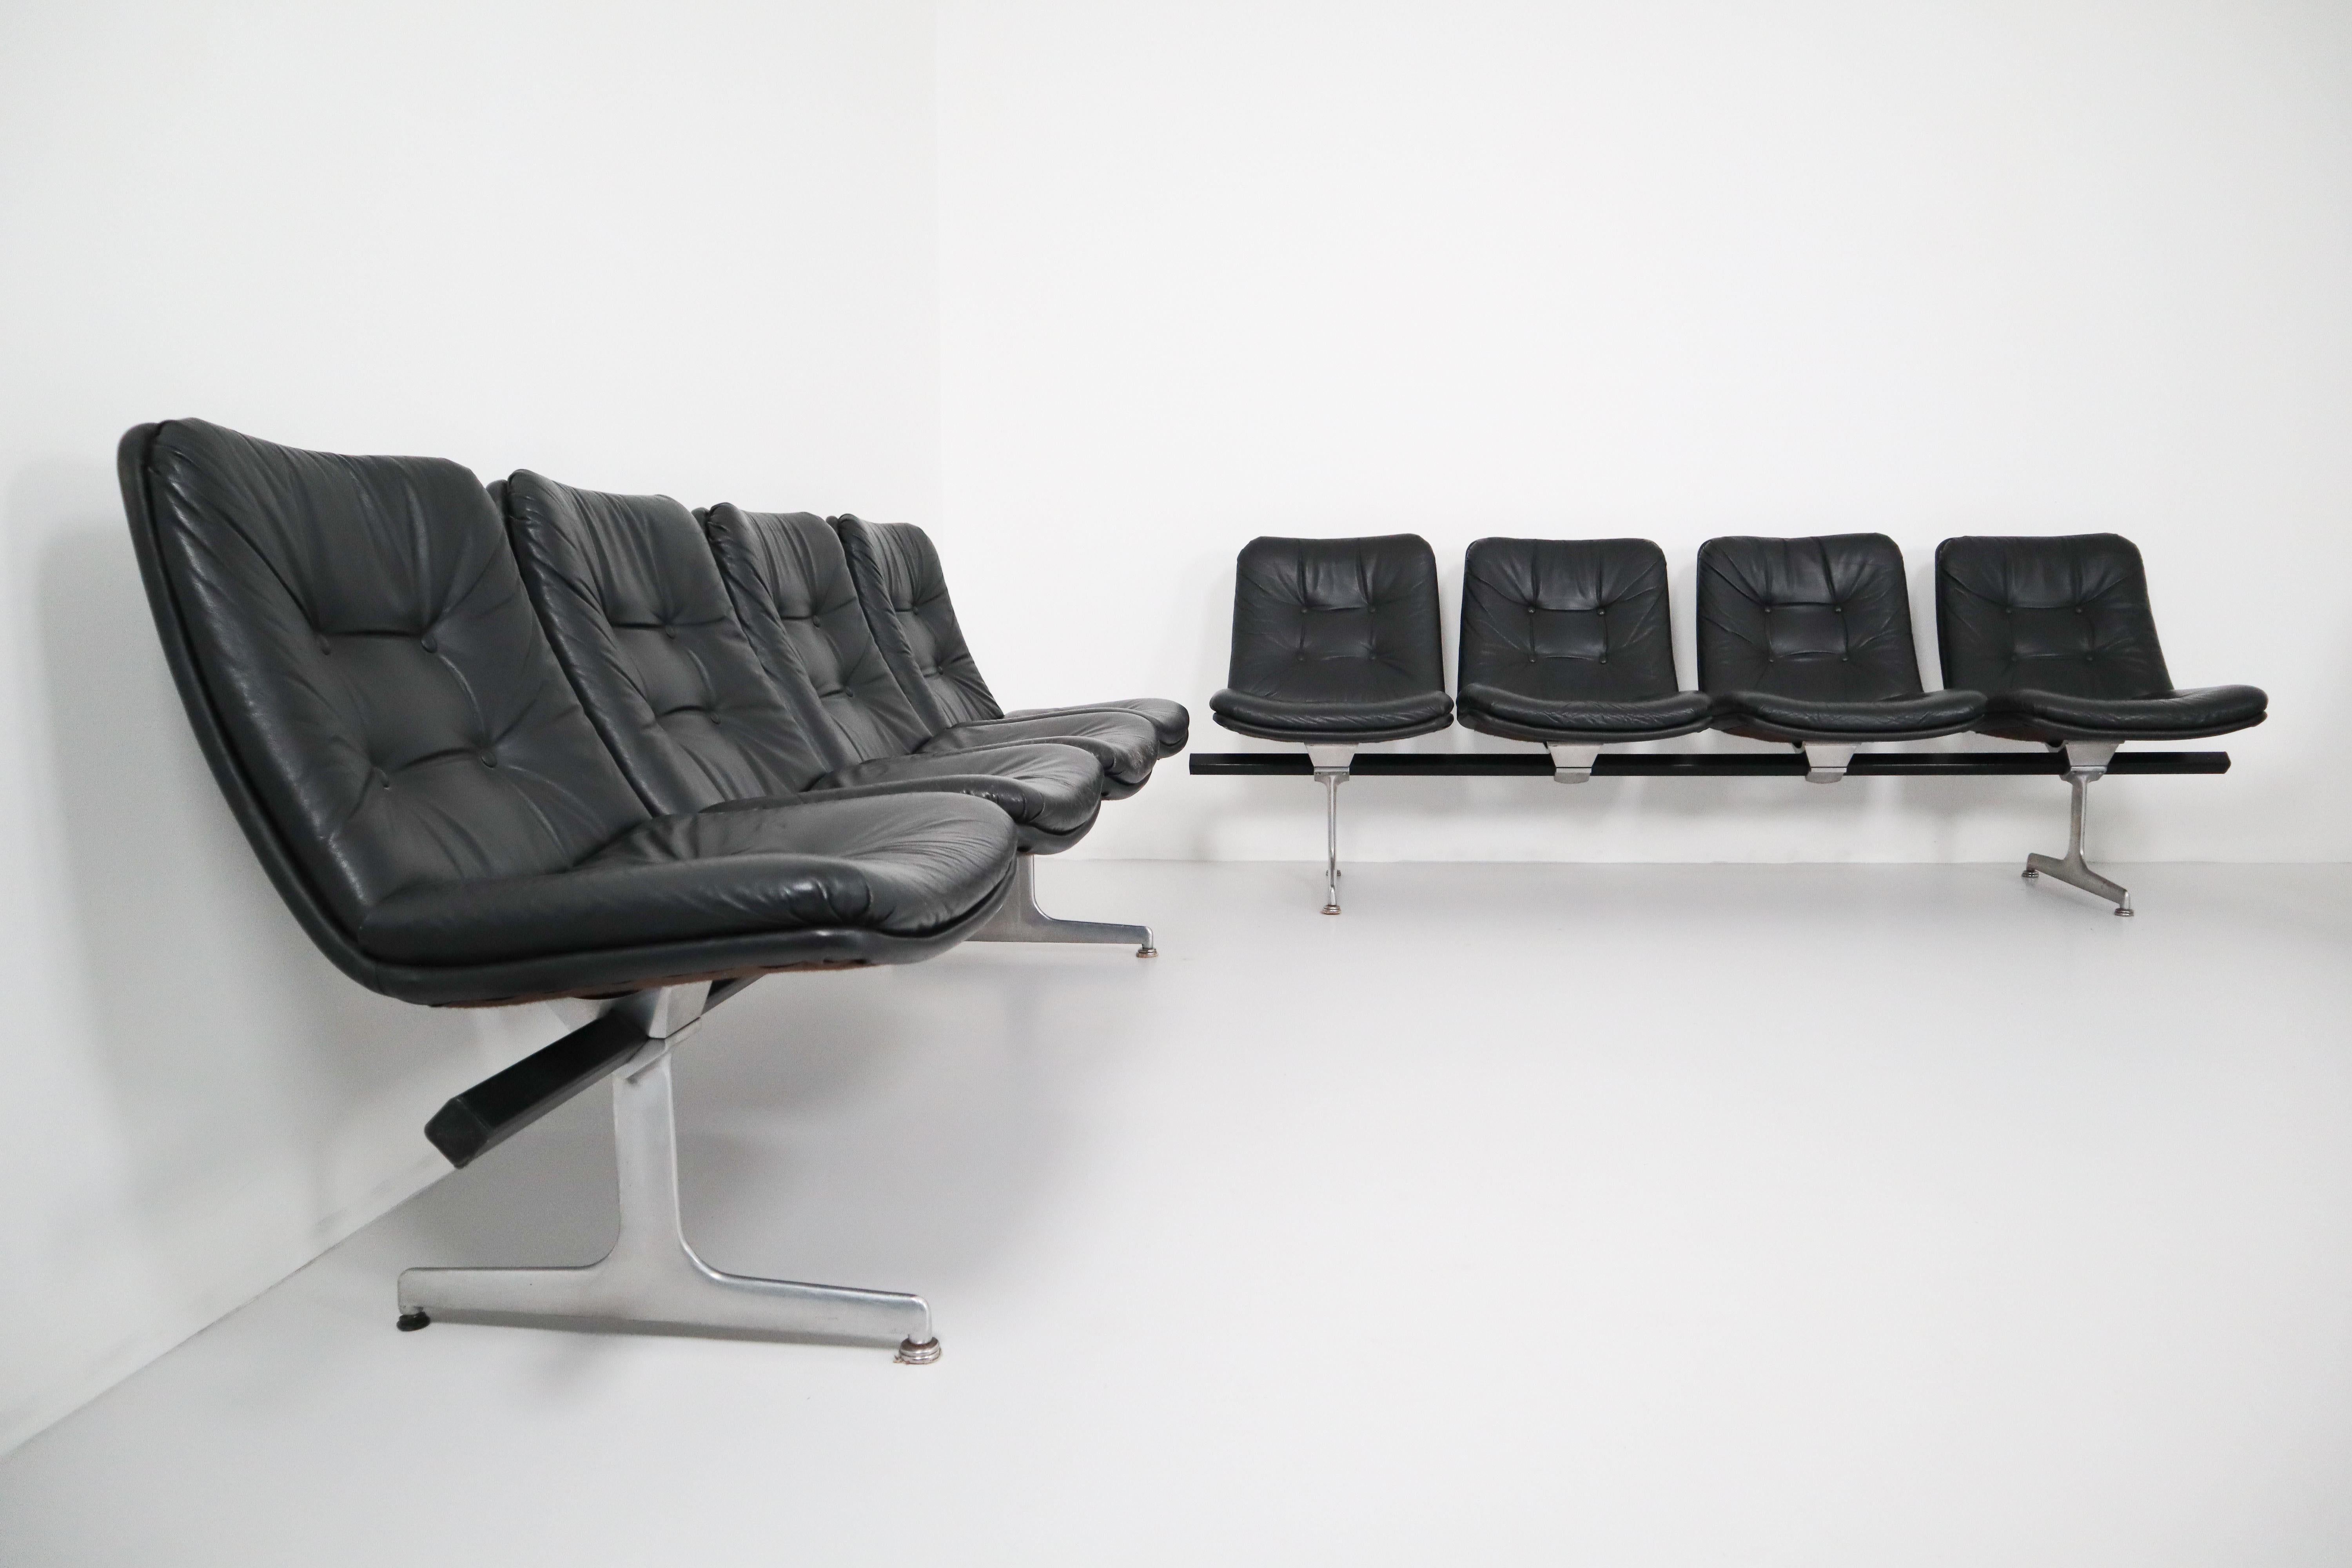 Zeitlose Sitzmöbel für Büros und Wartebereiche, entworfen in den 1960er Jahren von Geoffrey D. Harcourt für Artifort. Modulare Mehrfachsitzsysteme mit Beinrahmen aus Aluminiumguss und Fußplatten, die auf einem diagonal angeordneten Stahlträger